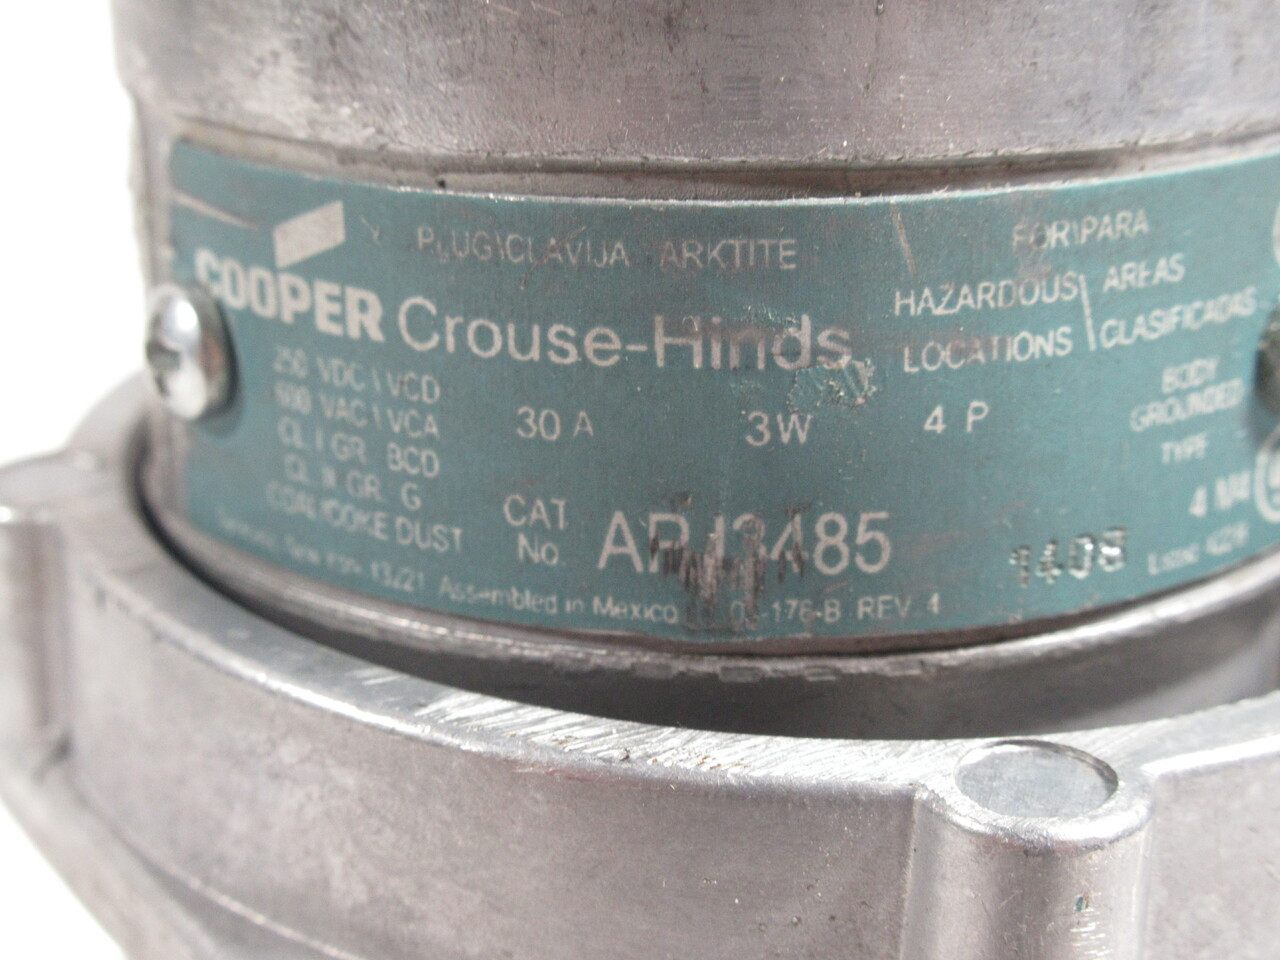 Crouse-Hinds APJ3485 Arktite Plug 30A 3W 4P 600VAC/250VDC USED